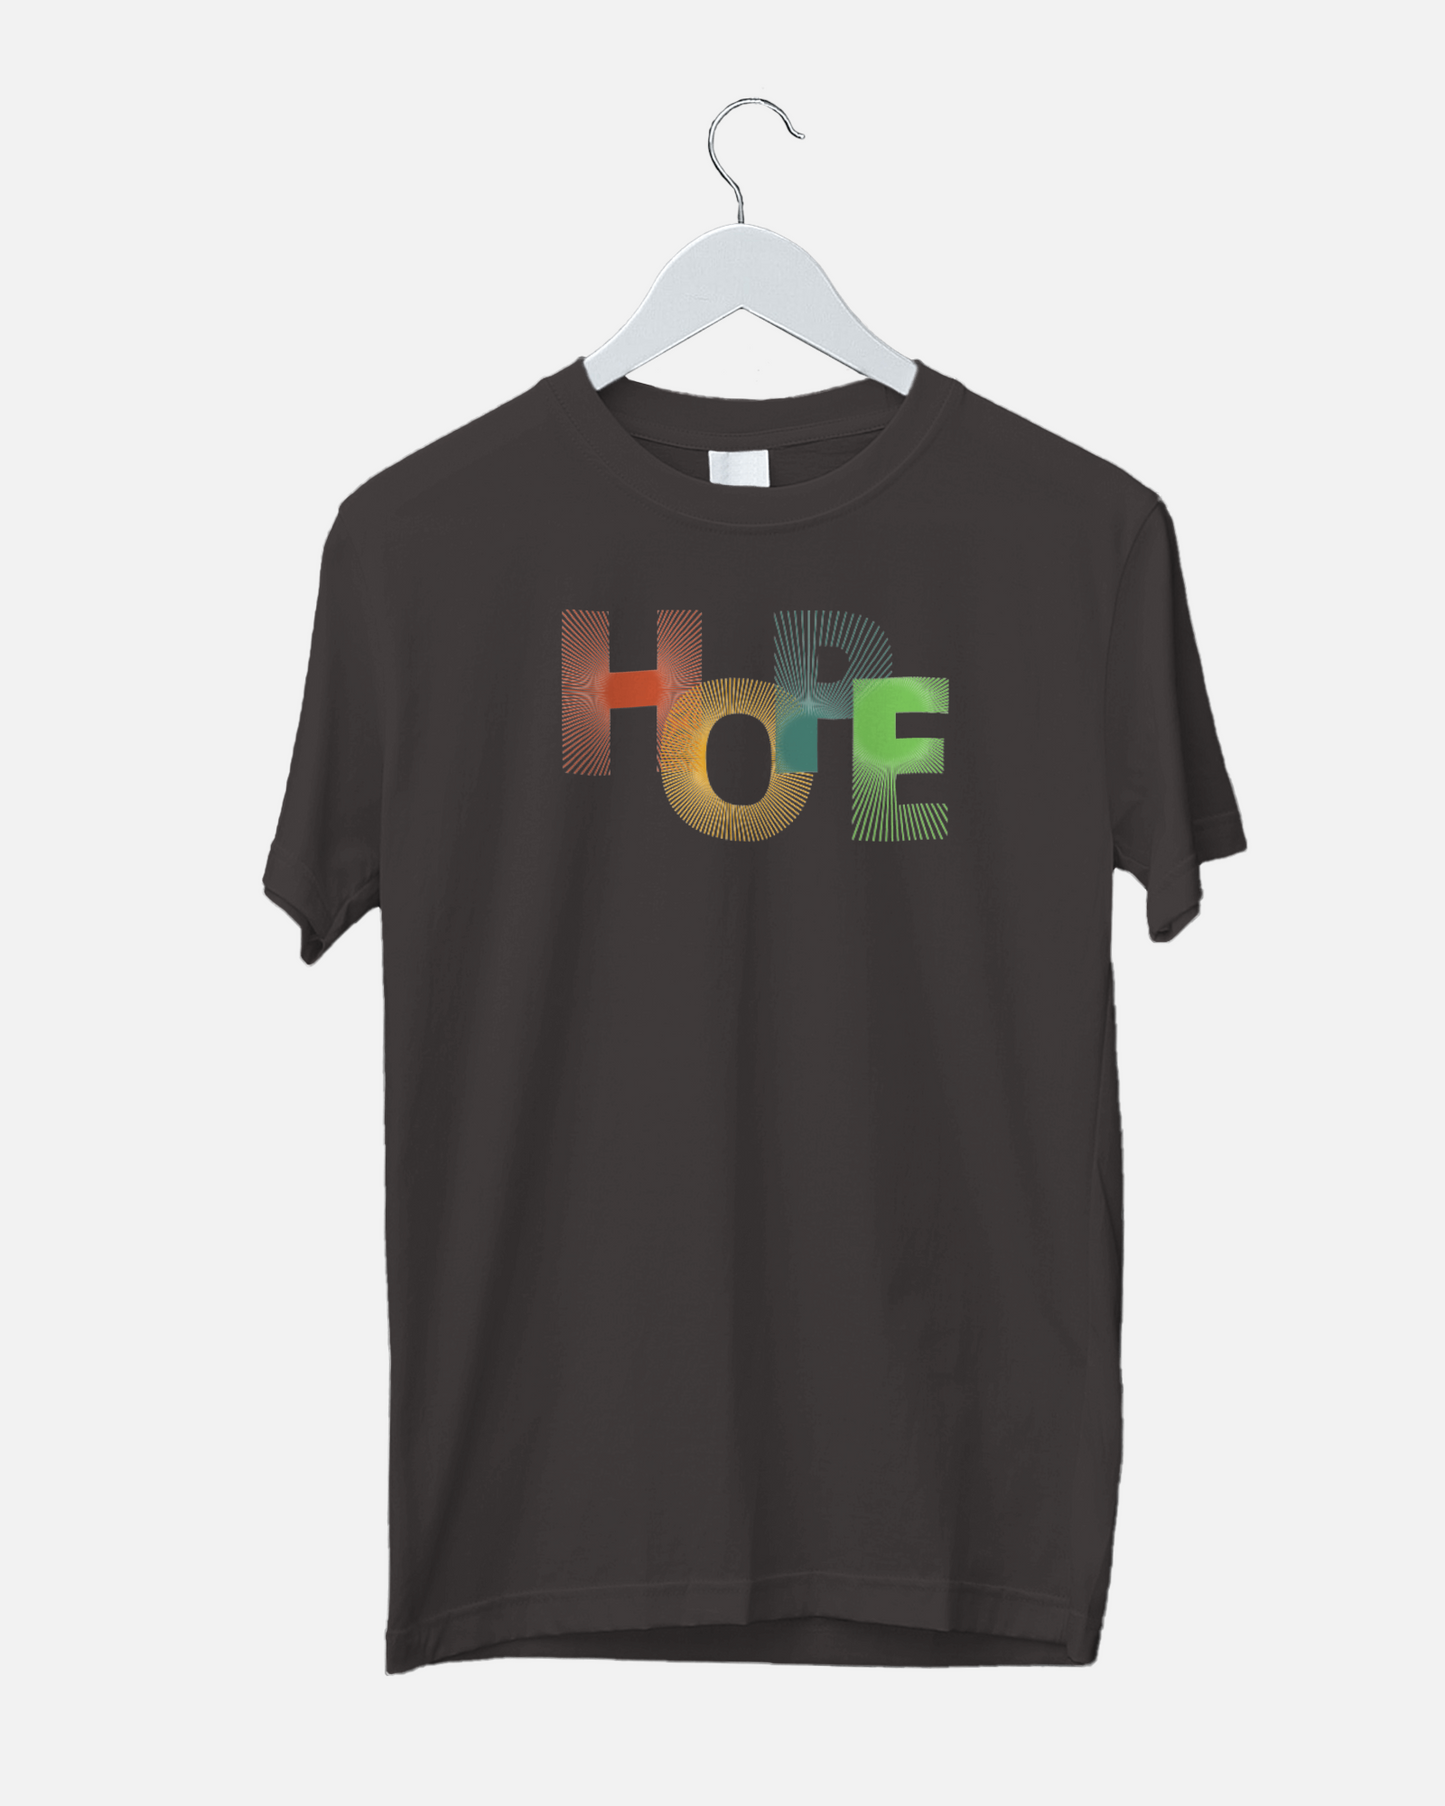 Hope Unisex T- shirt